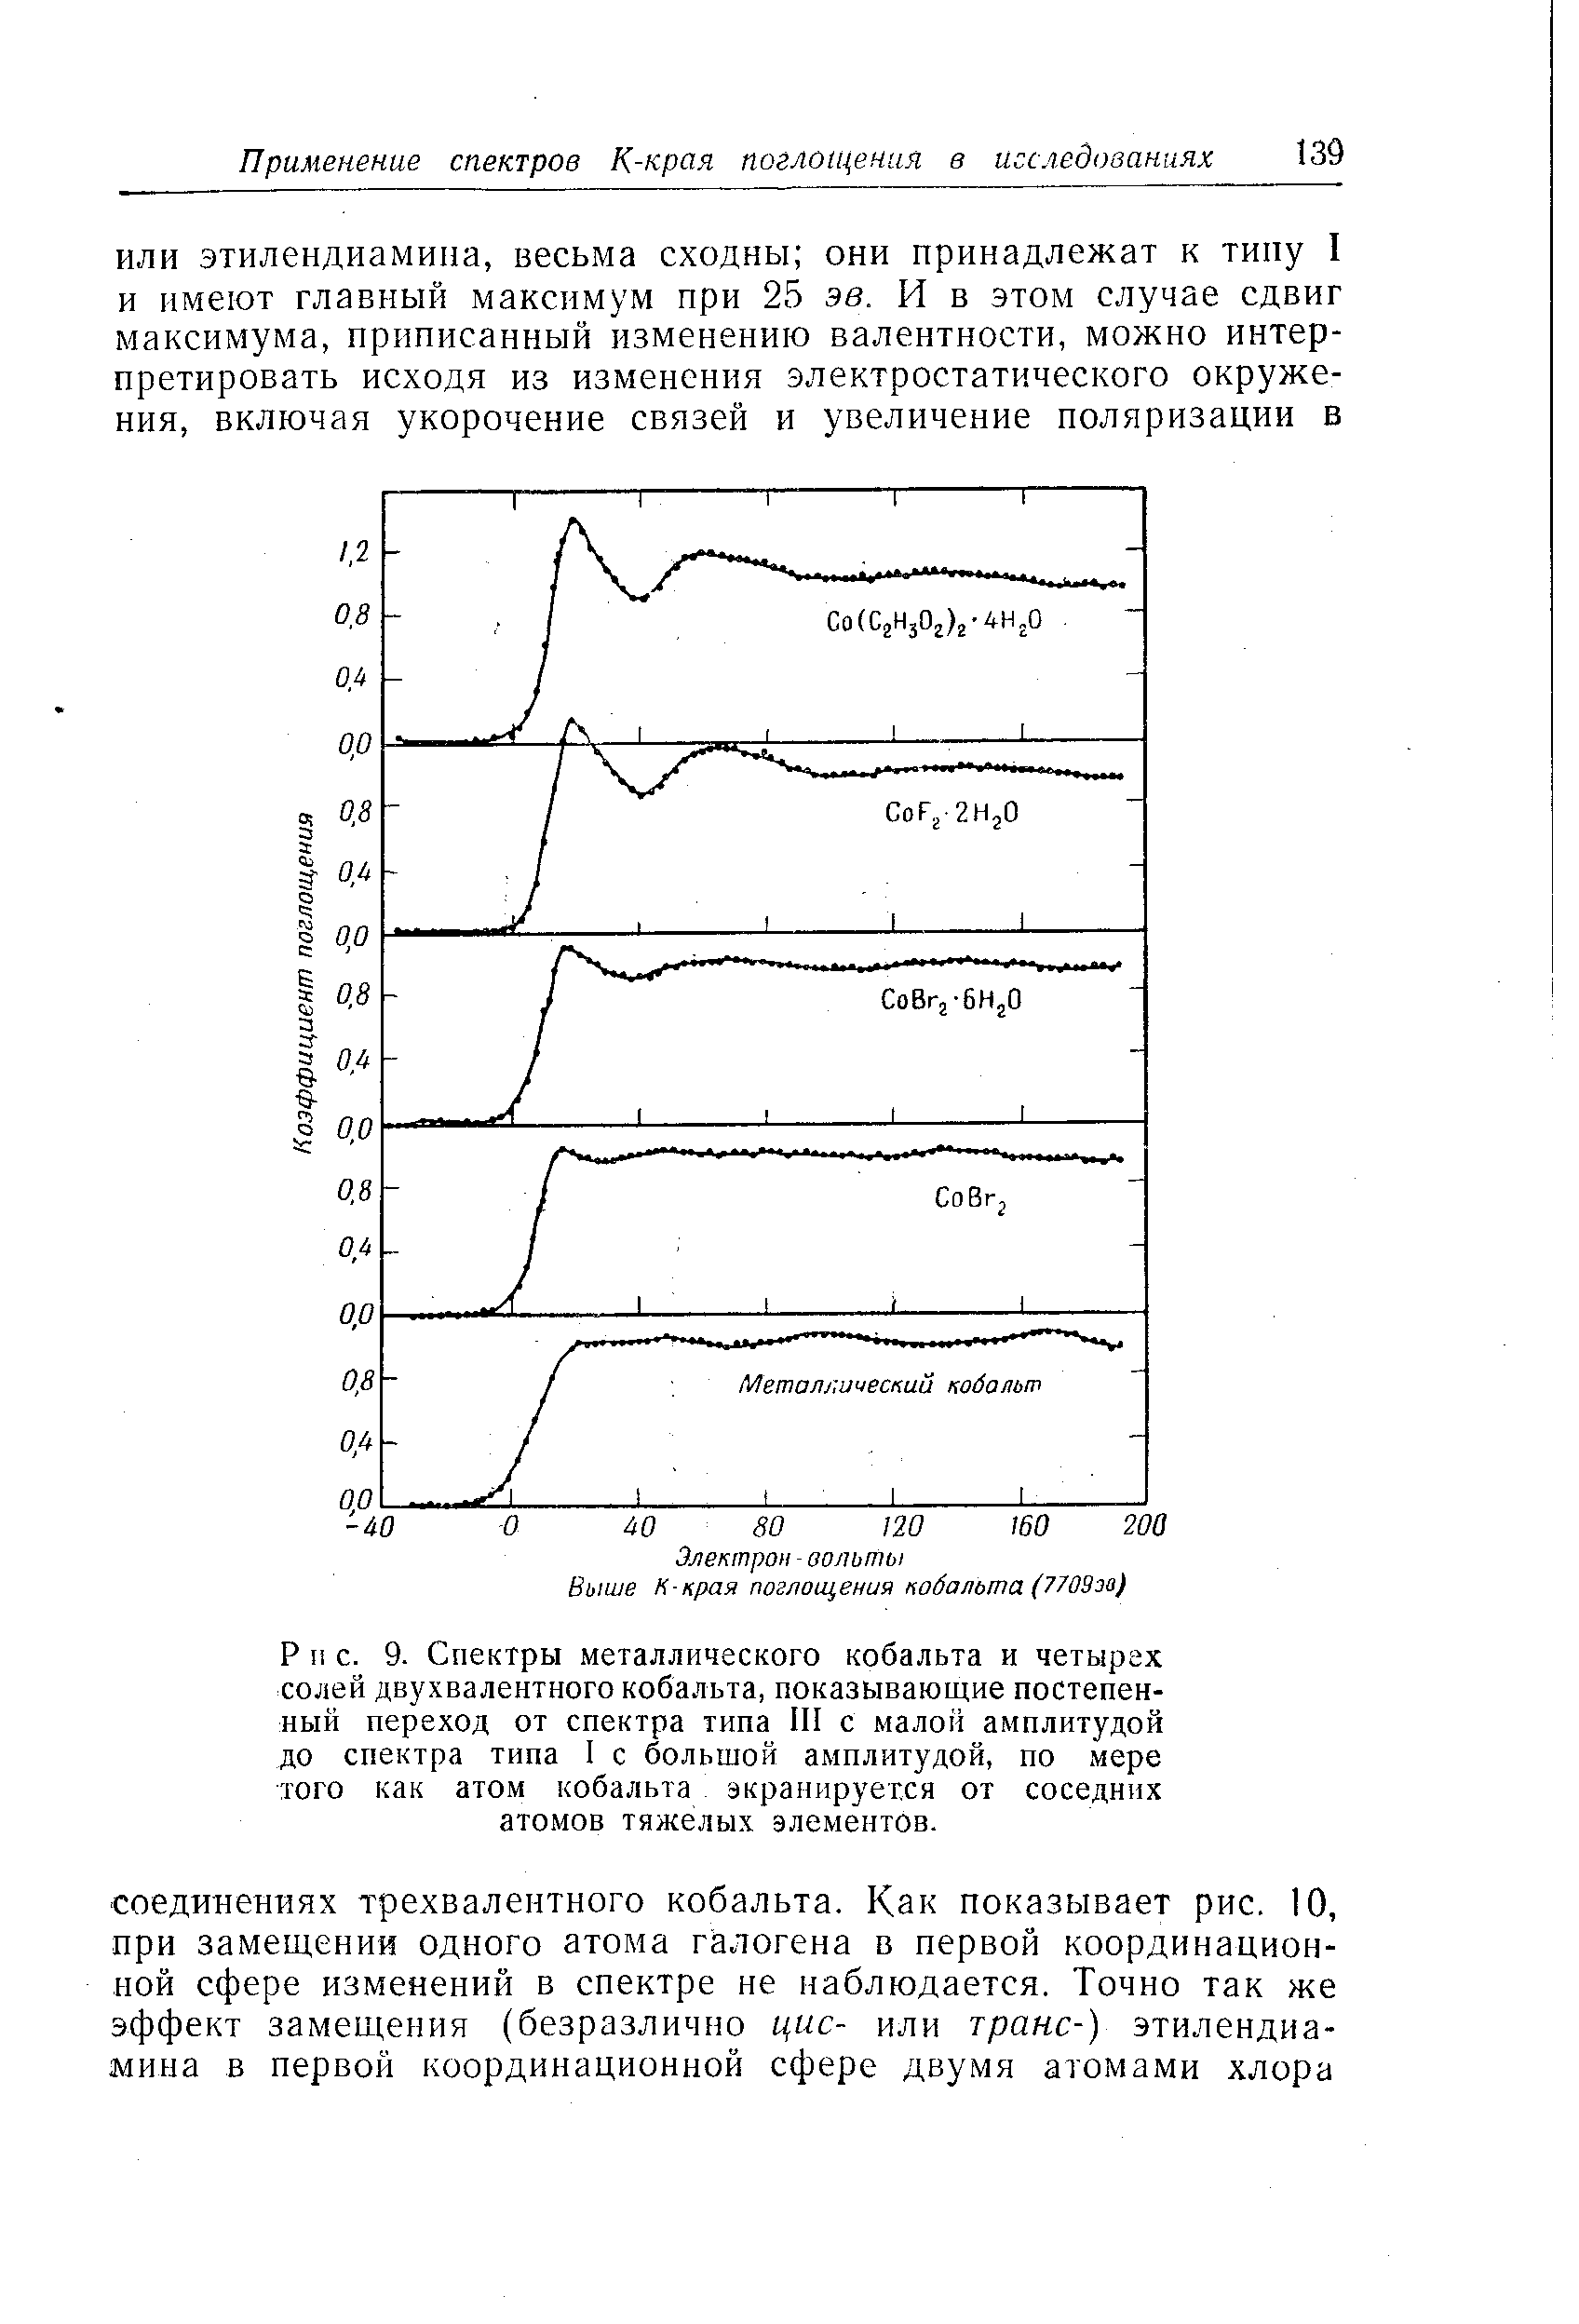 Спектры металлического кобальта и четырех солей двухвалентного кобальта, показывающие постепенный переход от спектра типа III с малой амплитудой до спектра типа 1 с большой амплитудой, по мере того как атом кобальта экранируется от соседних атомов тяжелых элементов.